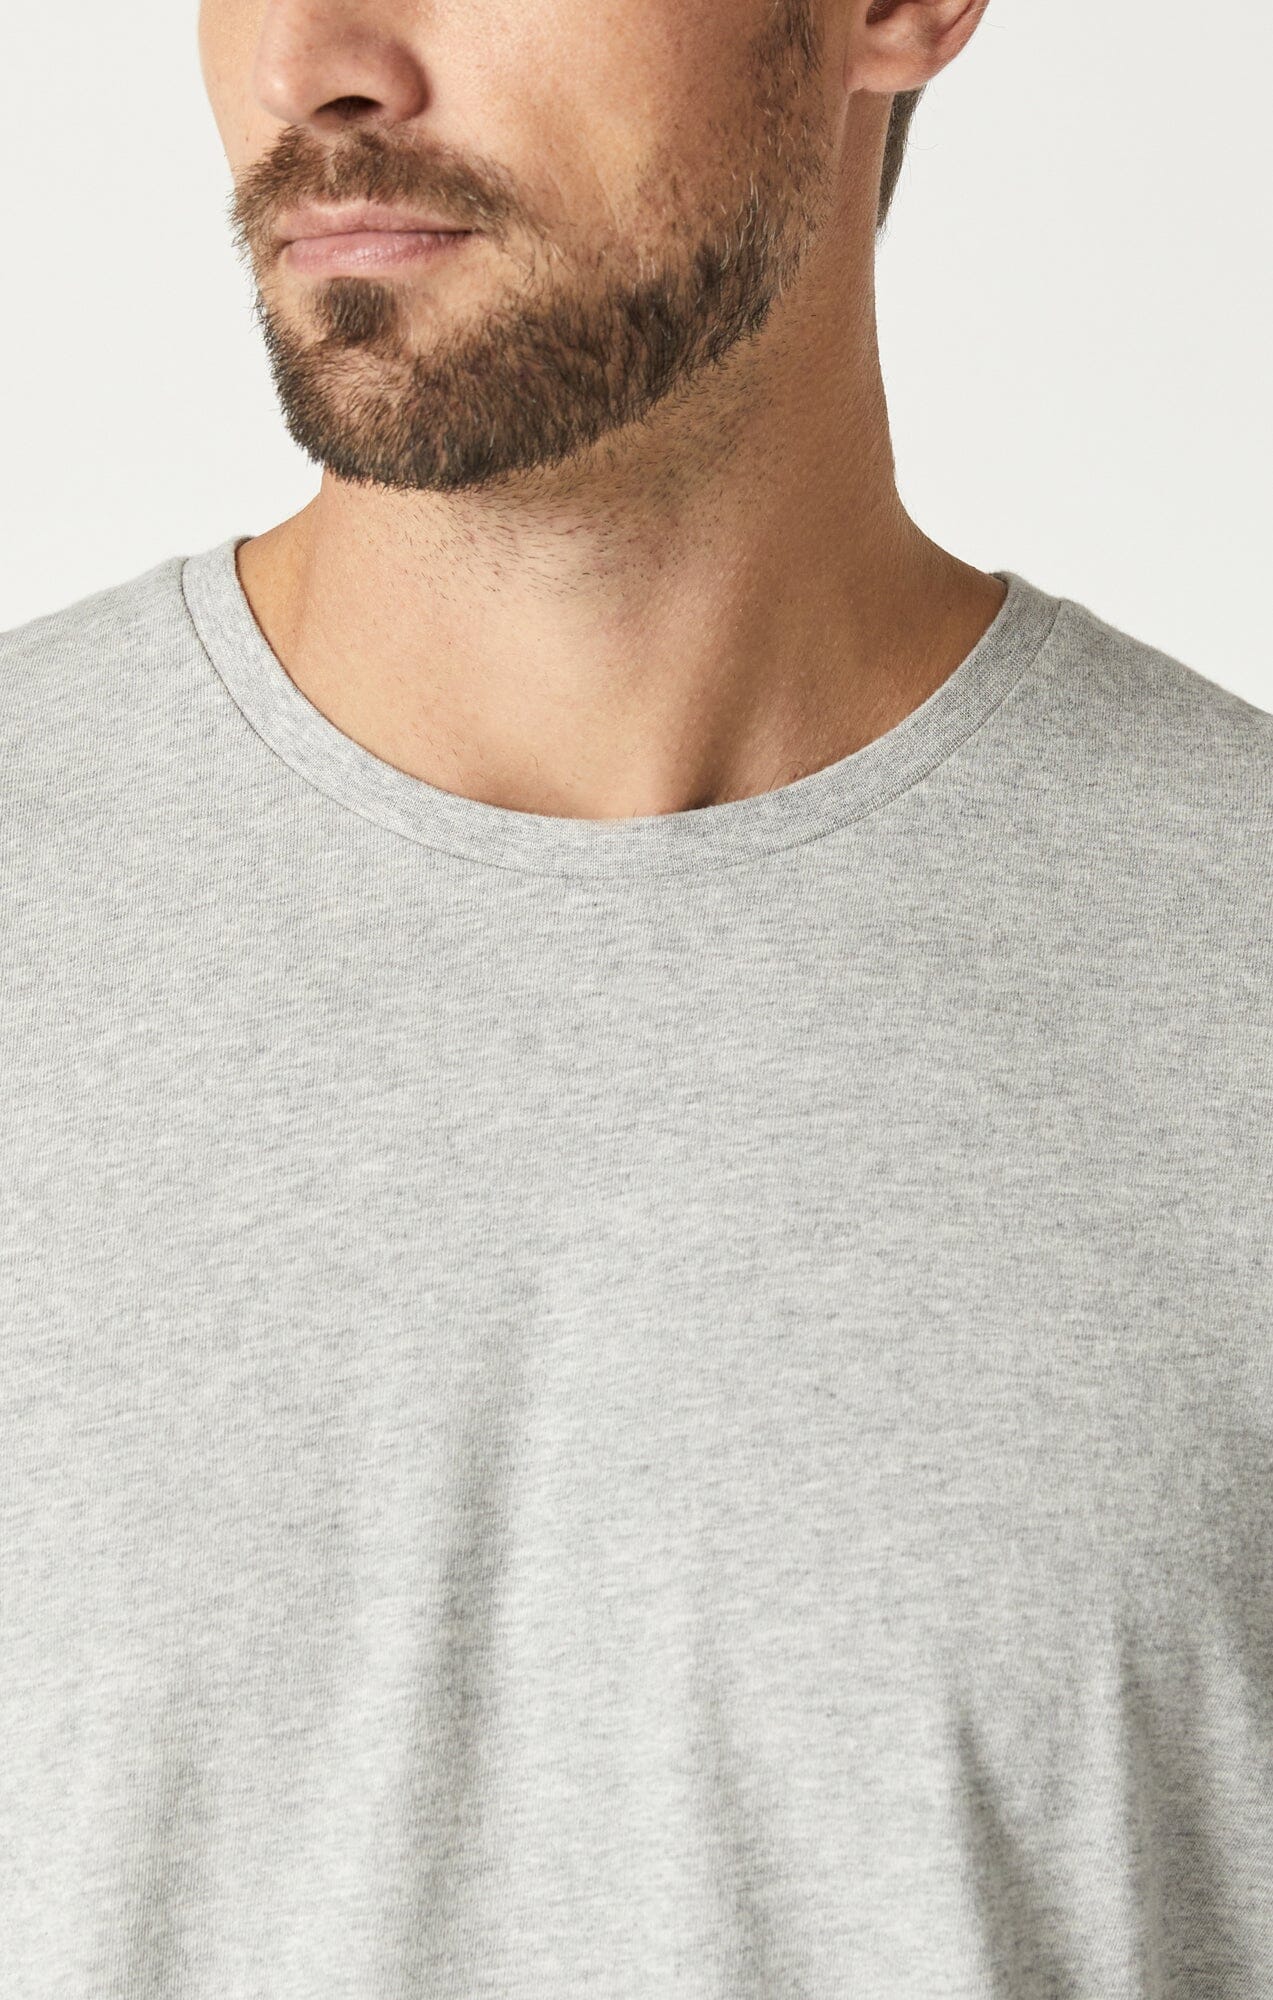 Mavi Men's Crew Neck T-Shirt In Light Grey Melange